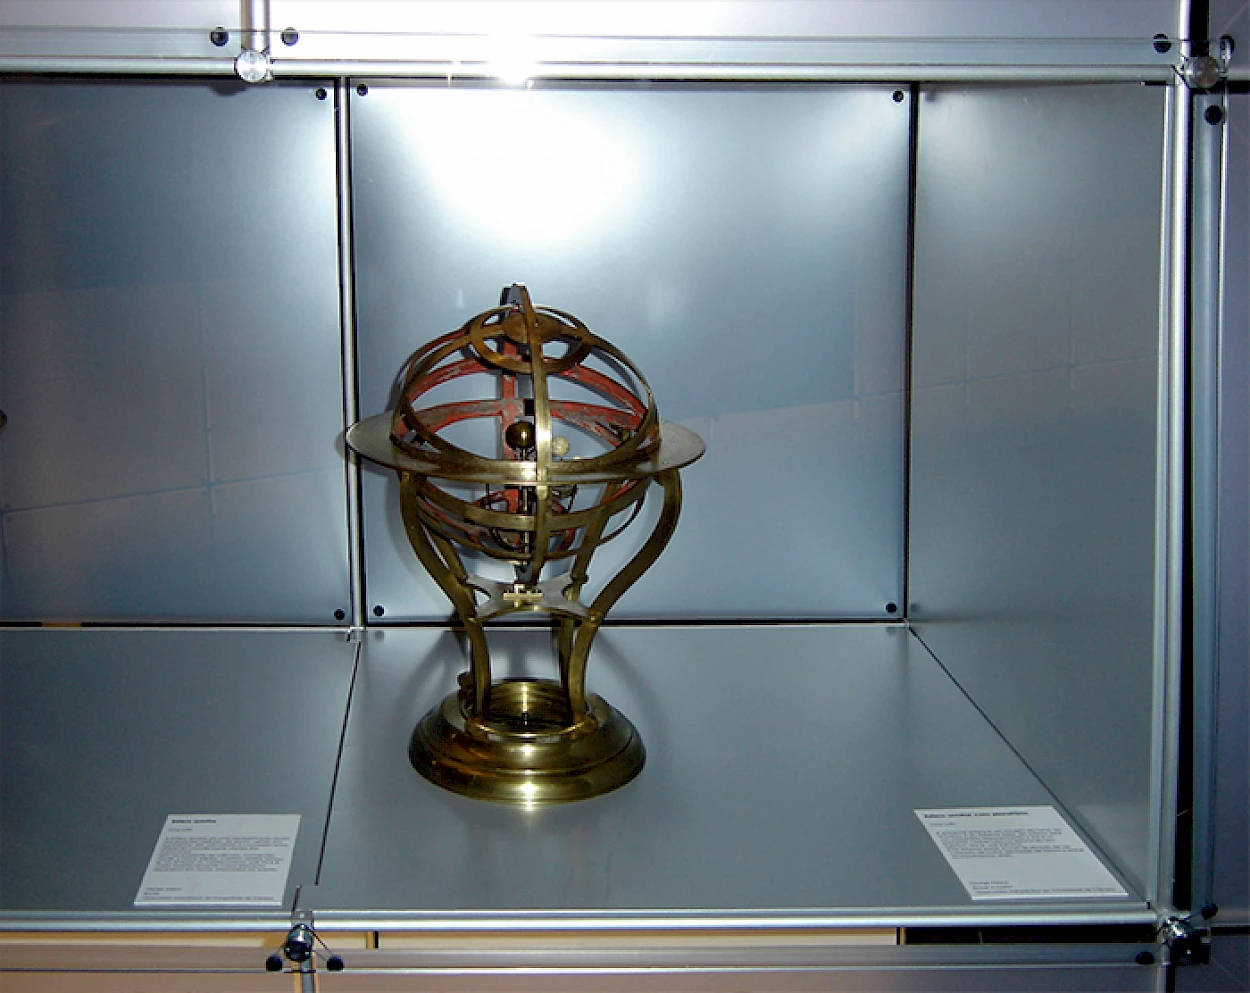 Fig. 1 - Esfera armilar com planetário, George Adams, Londres 1775-1780, OGAUC-I-006, na exposição “Laboratório do Mundo” na Pinacoteca de S. Paulo, Brasil, 2005.